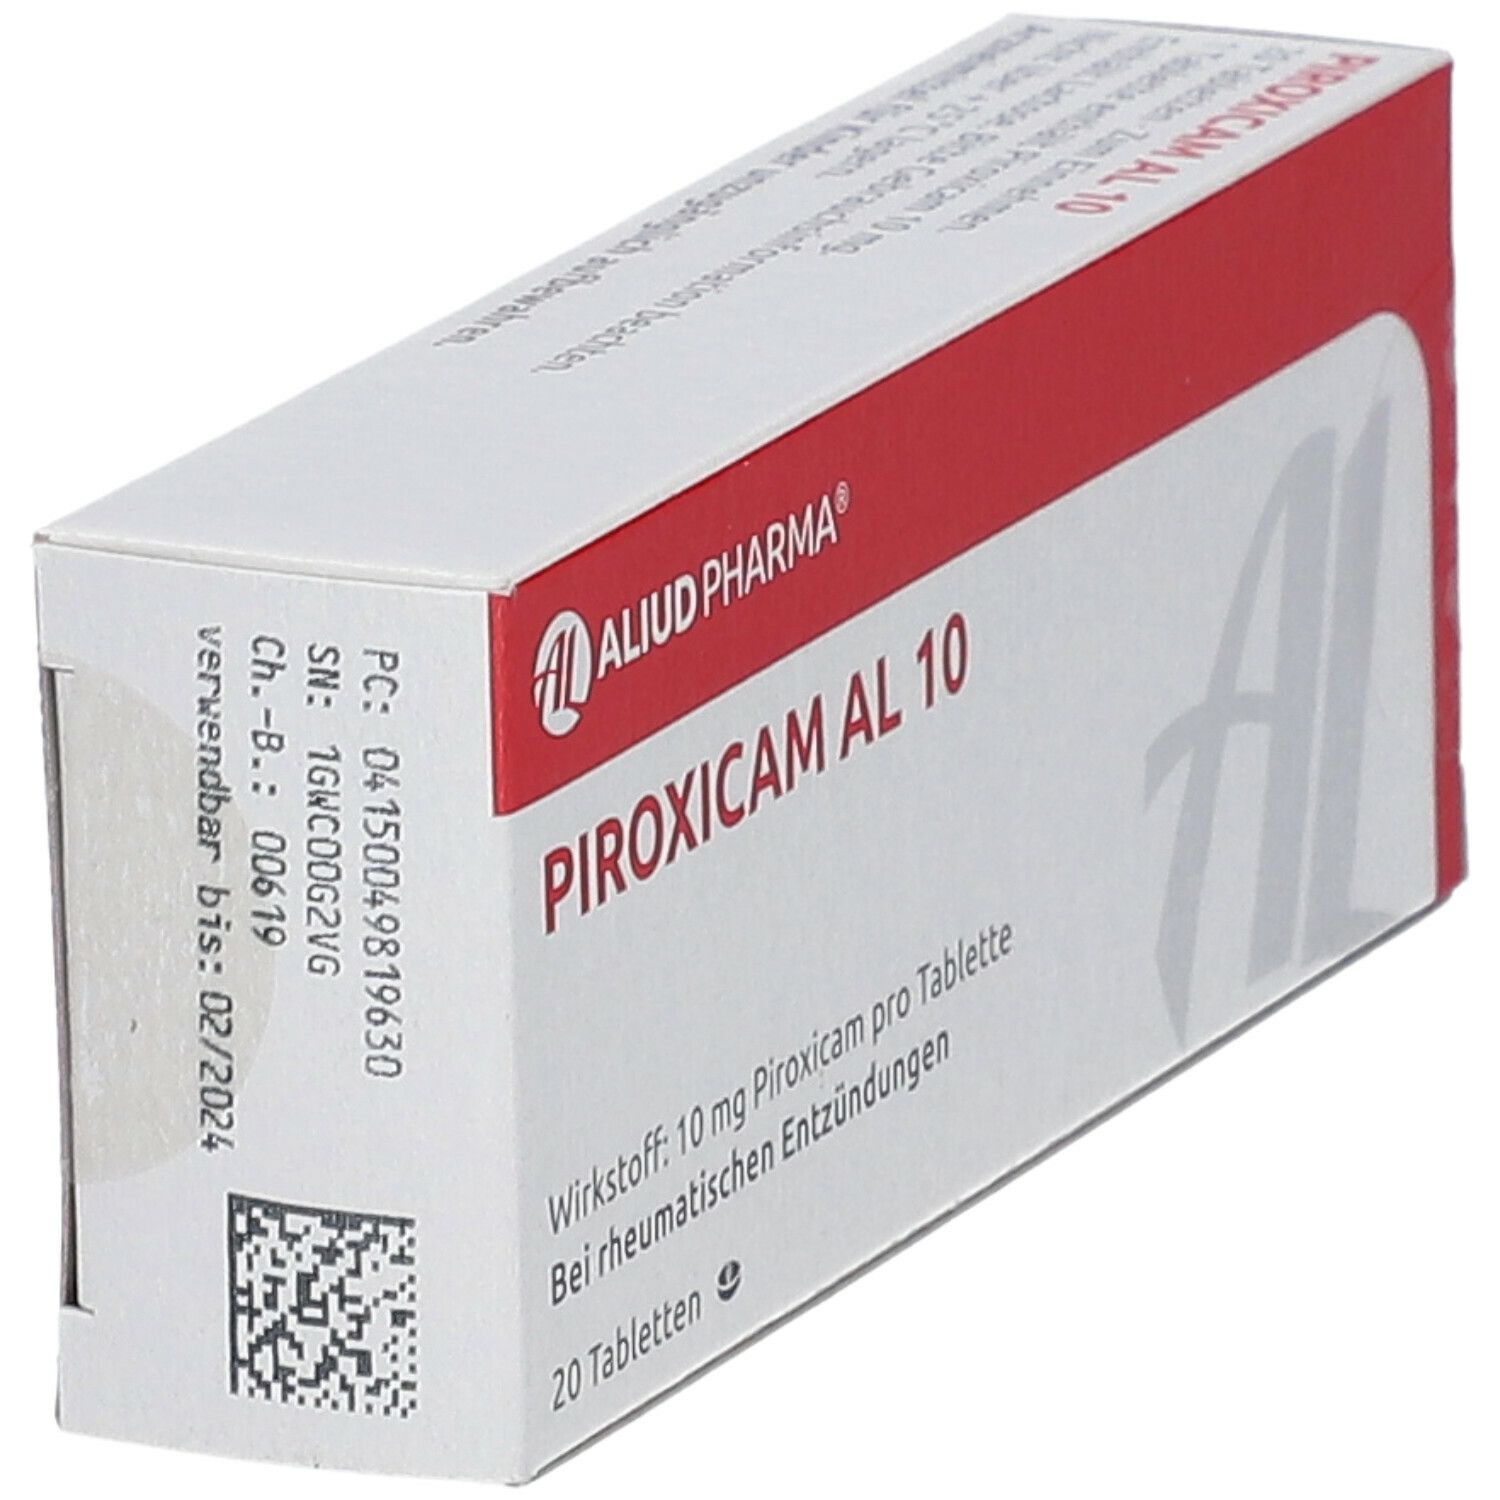 Piroxicam AL 10